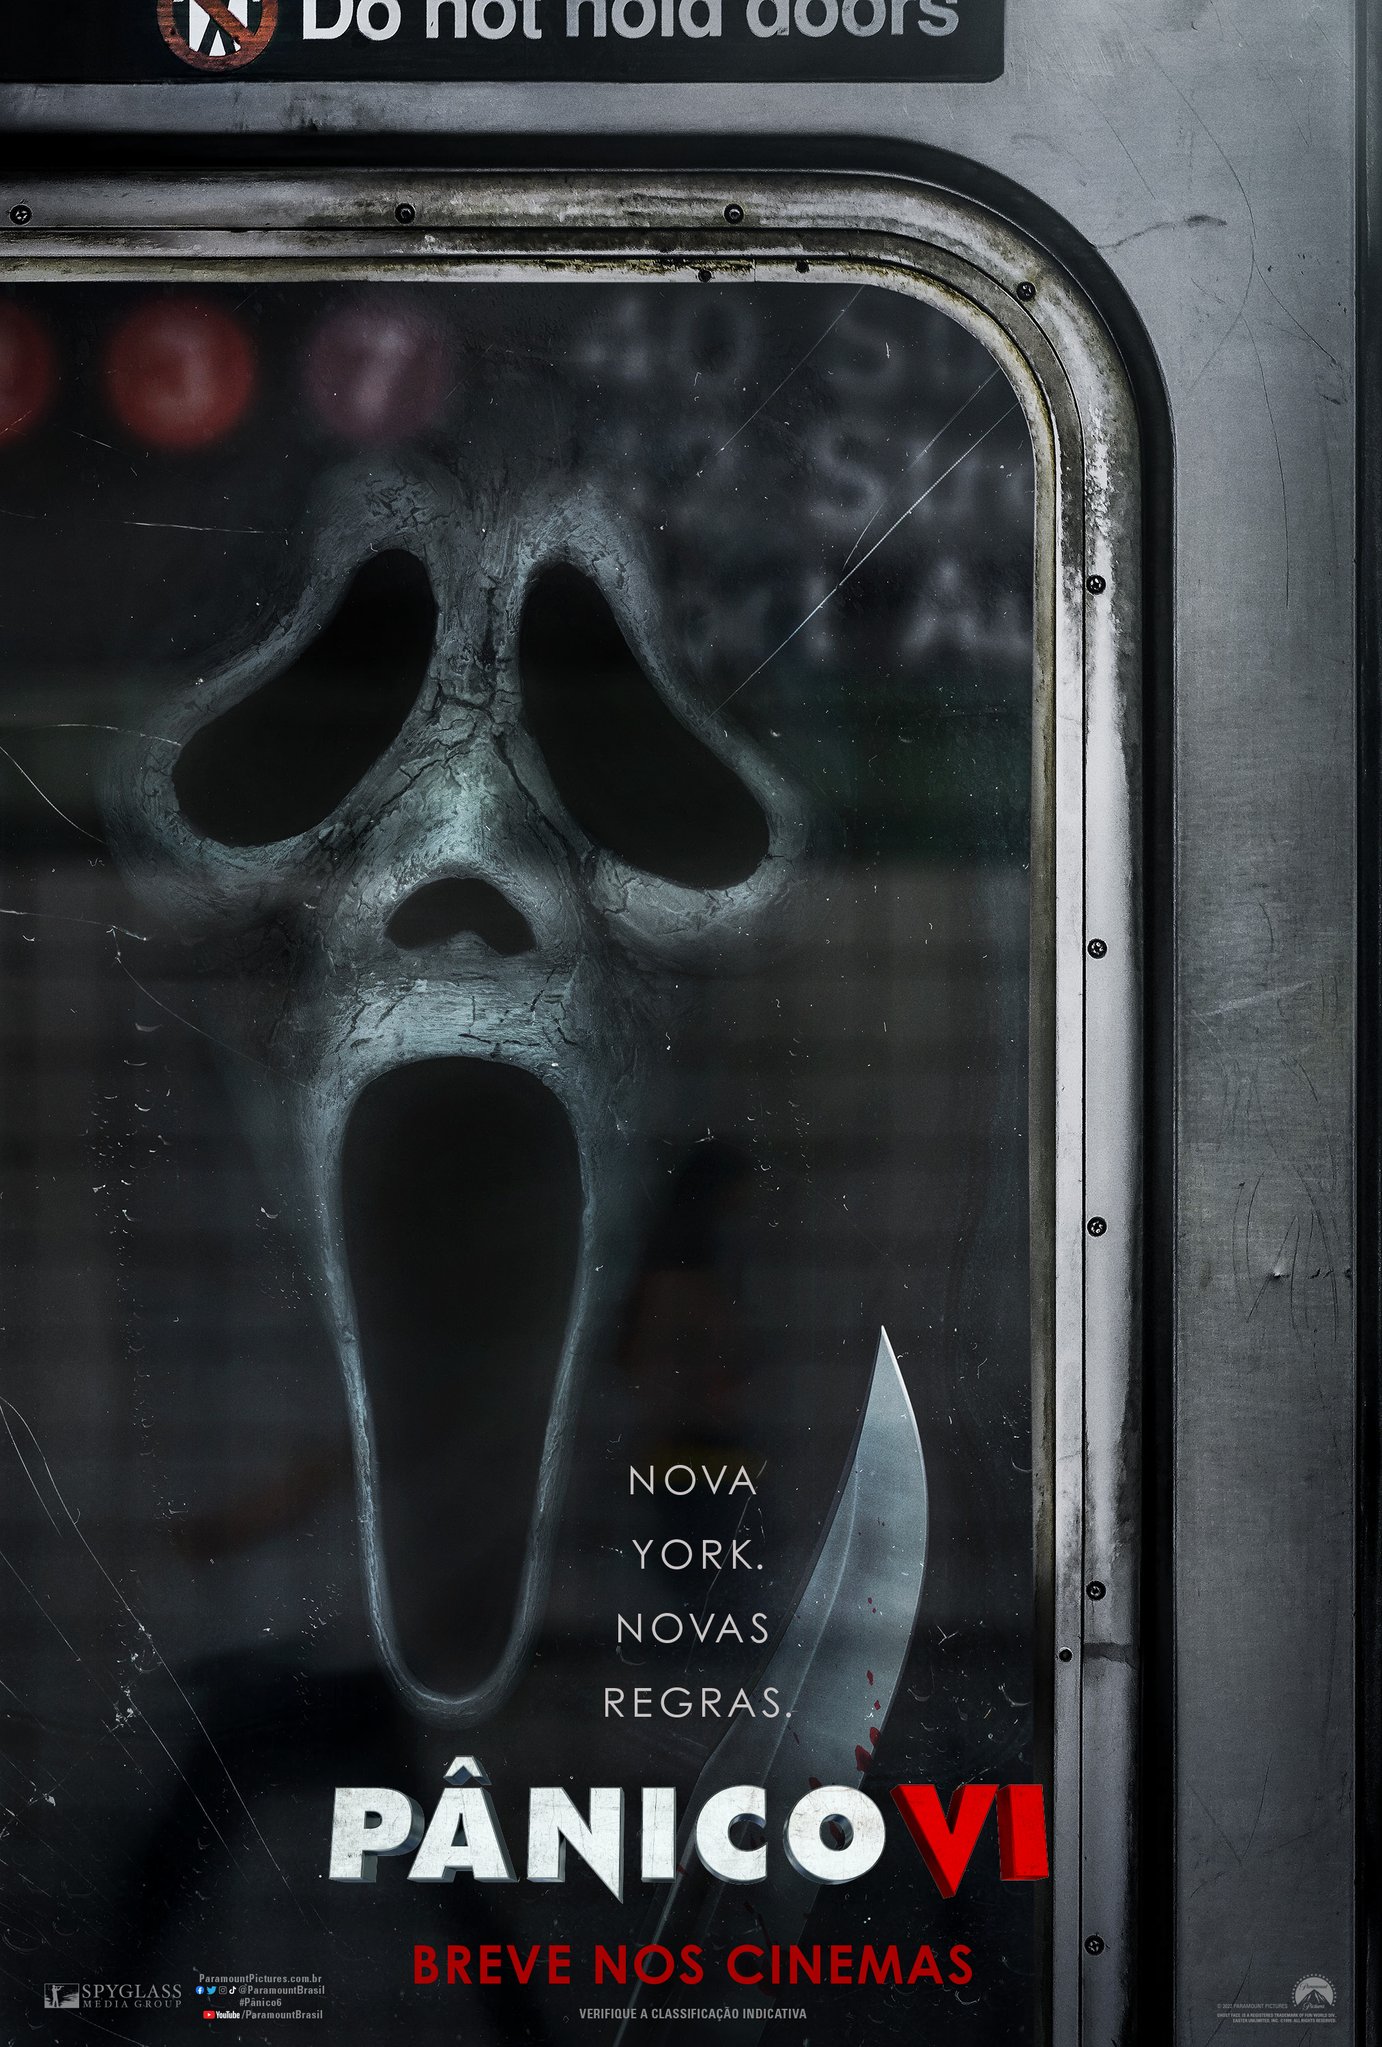 Novo pôster de Pânico VI, divulgado pela Paramount Pictures, mostra Ghostface aterrorizando no metrô de Nova York.